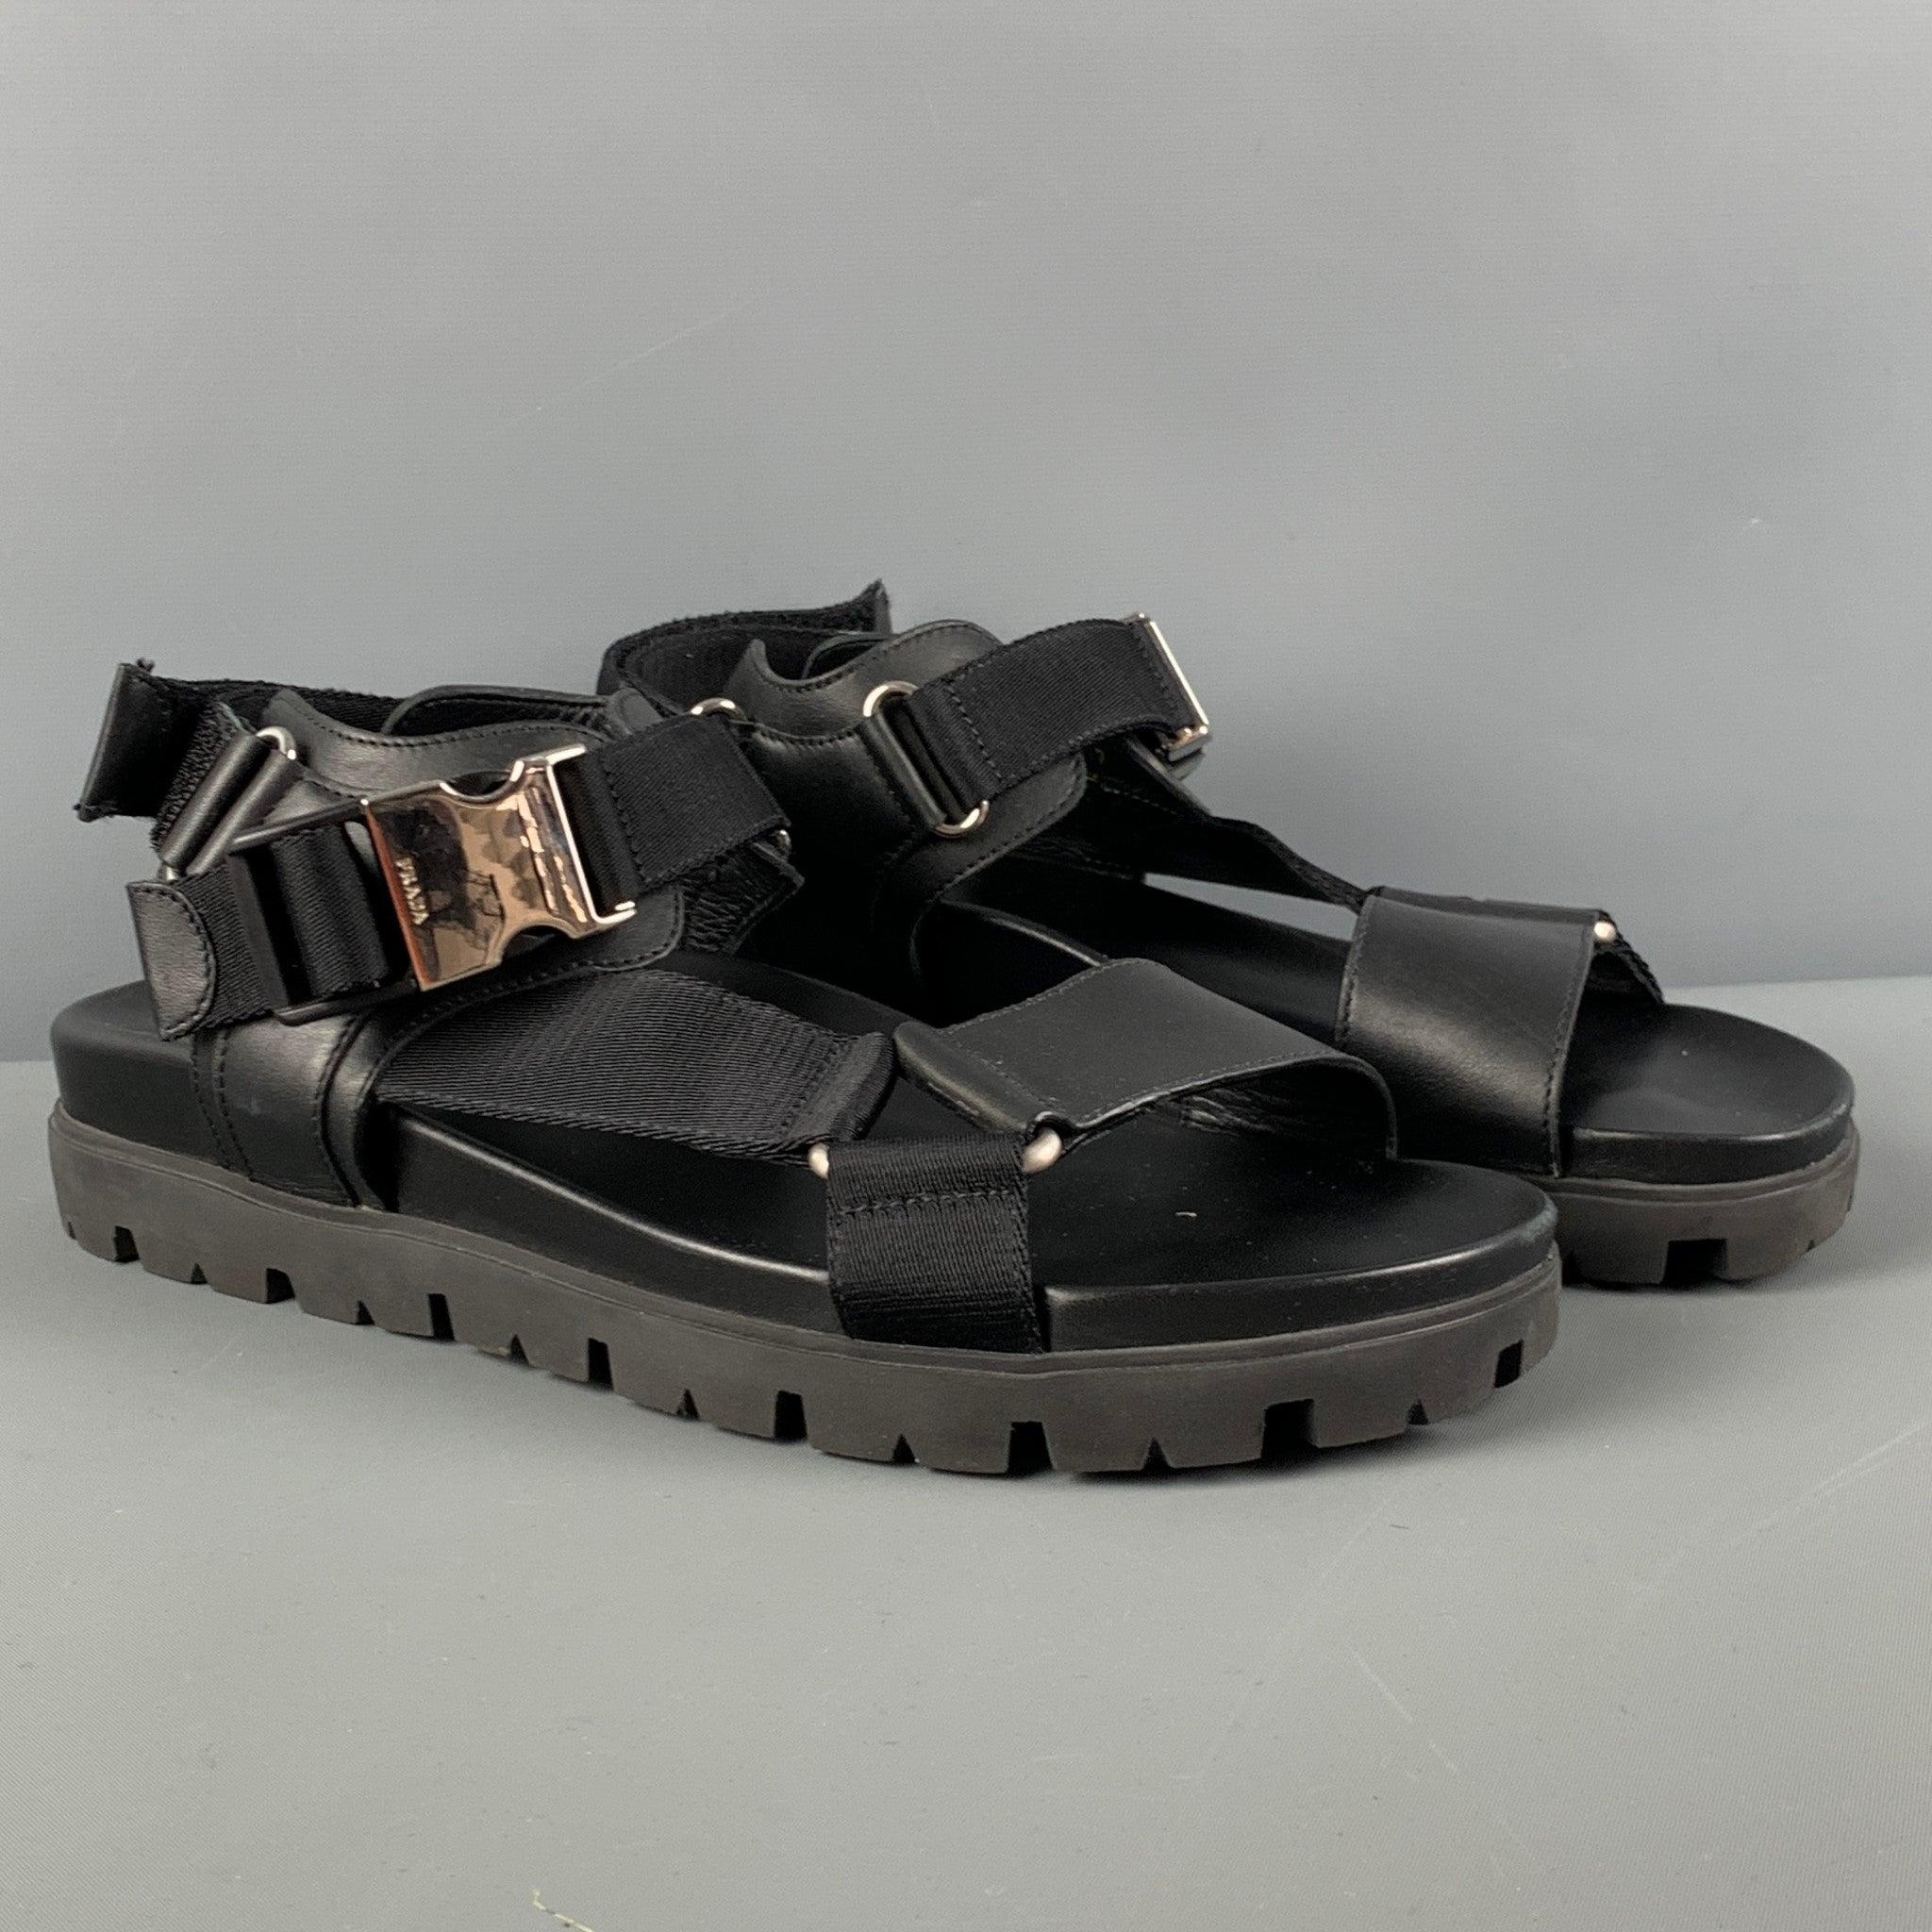 Les sandales PRADA sont en cuir noir et présentent un bout ouvert, des boucles argentées et une fermeture à boucle et crochet à l'arrière. Fabriquées en Italie.
Excellent
Etat d'occasion. 

Marqué :   2X3055 7Semelle : 11 pouces  x 4 pouces 
  
  
